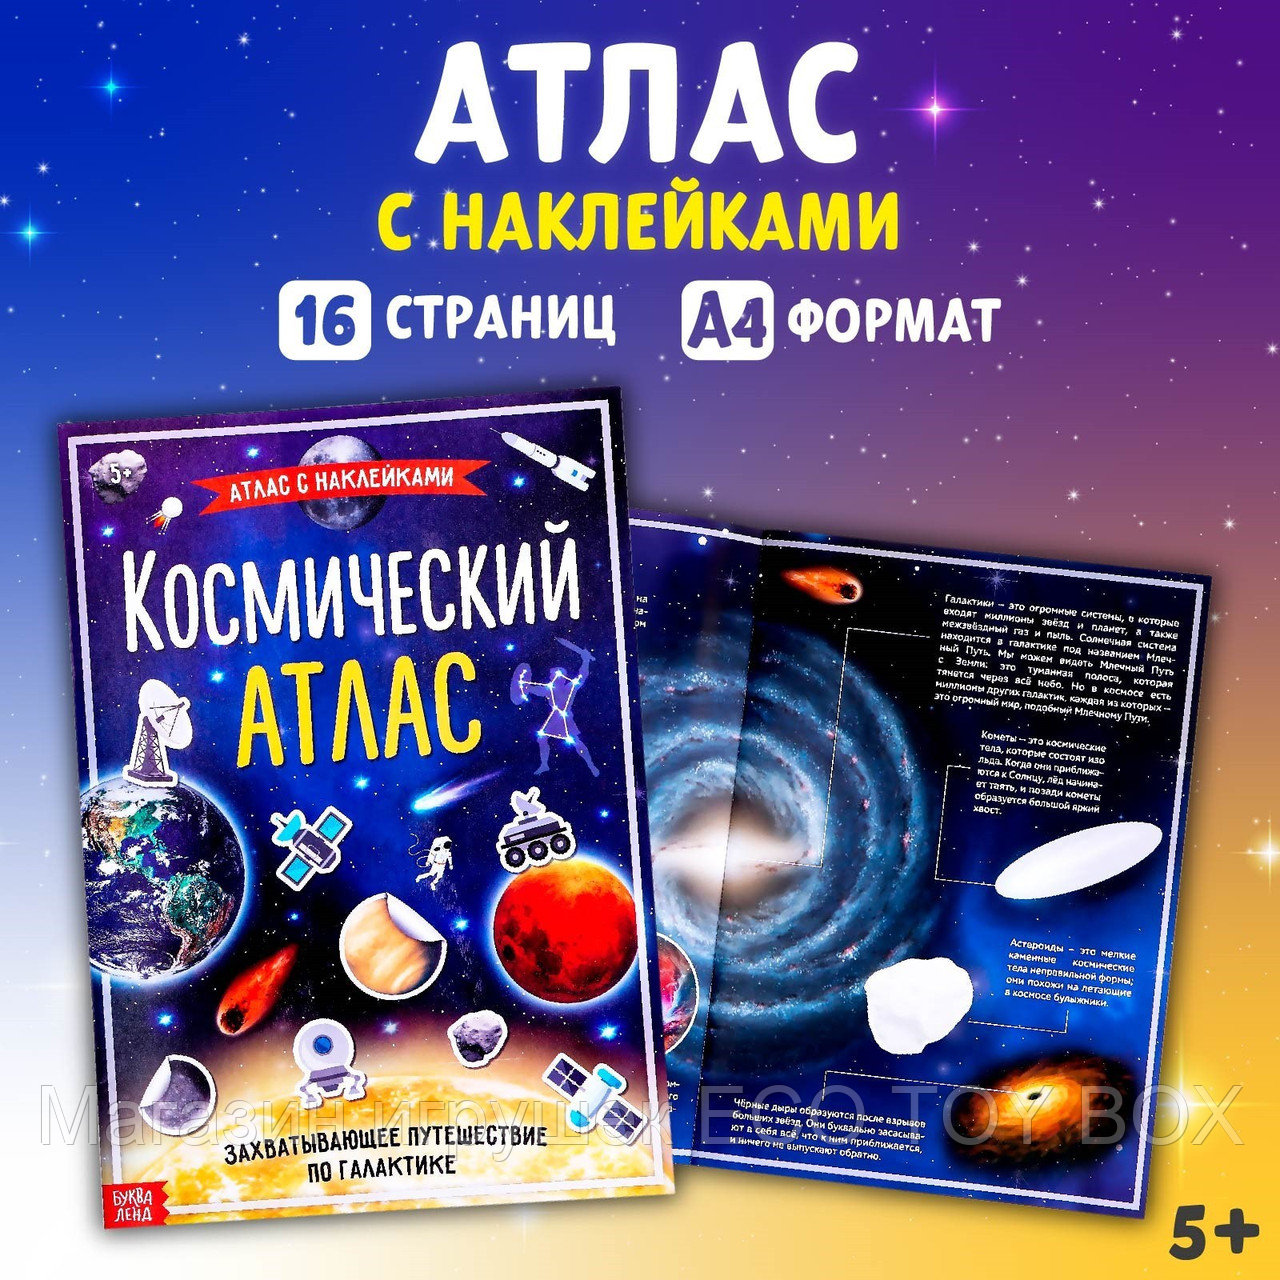 Книга с наклейками «Космический атлас», формат А4, 16 стр., фото 1